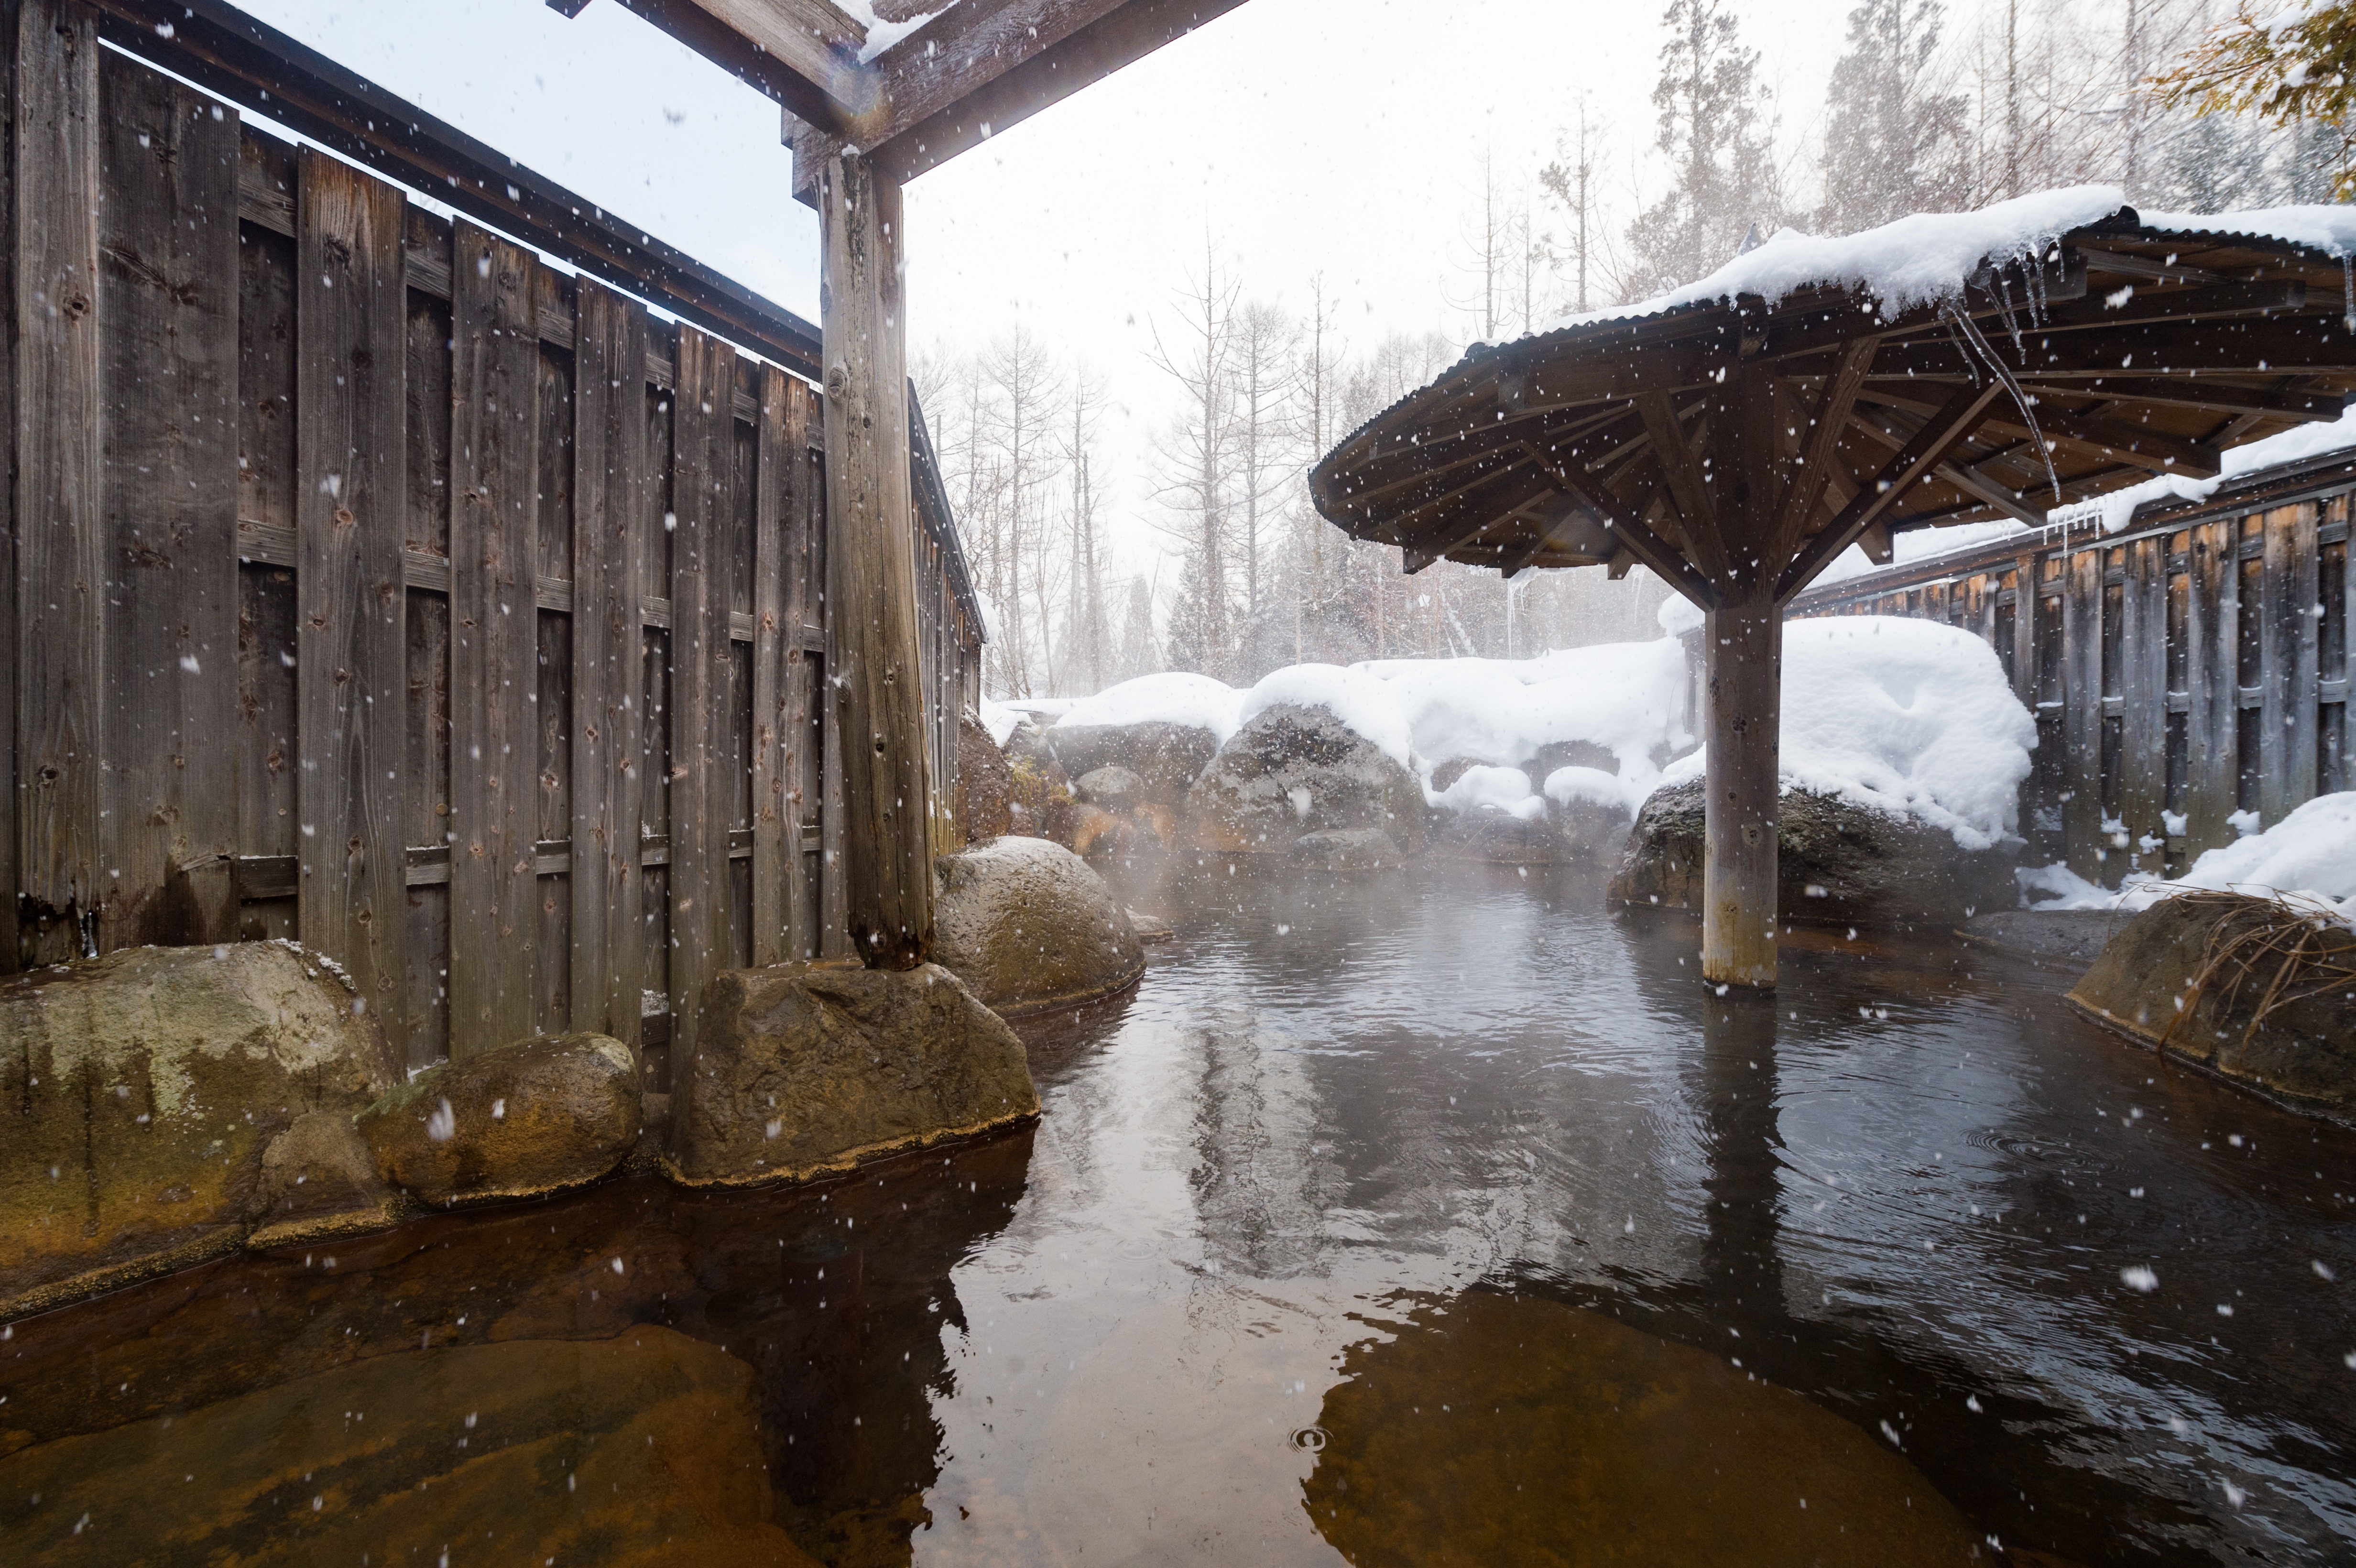 冬の醍醐味 雪の露天風呂の写真を無料ダウンロード フリー素材 ぱくたそ